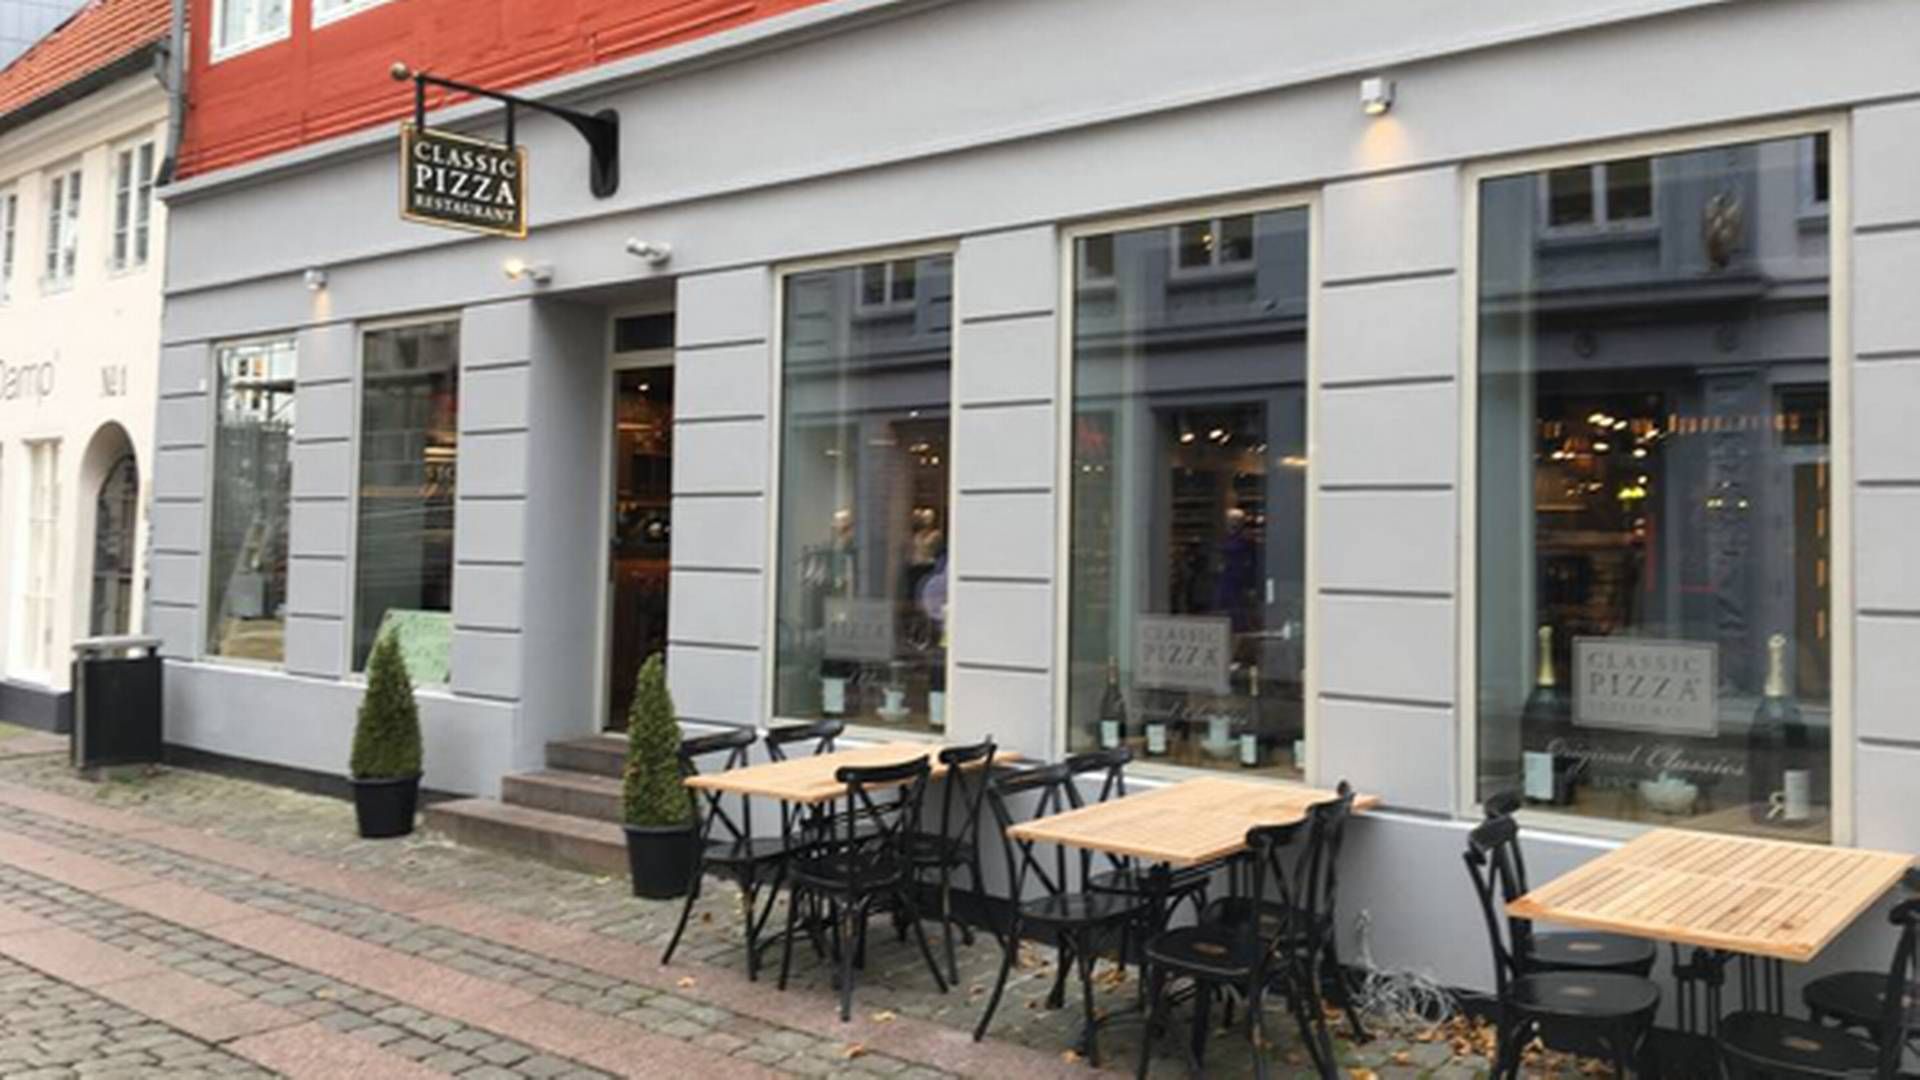 Classic Pizza er åbnet i Jacob BarBQ's tidligere lokaler i Aarhus ved siden af Magasin. | Foto: Mick Kristensen/Jyllands-Posten